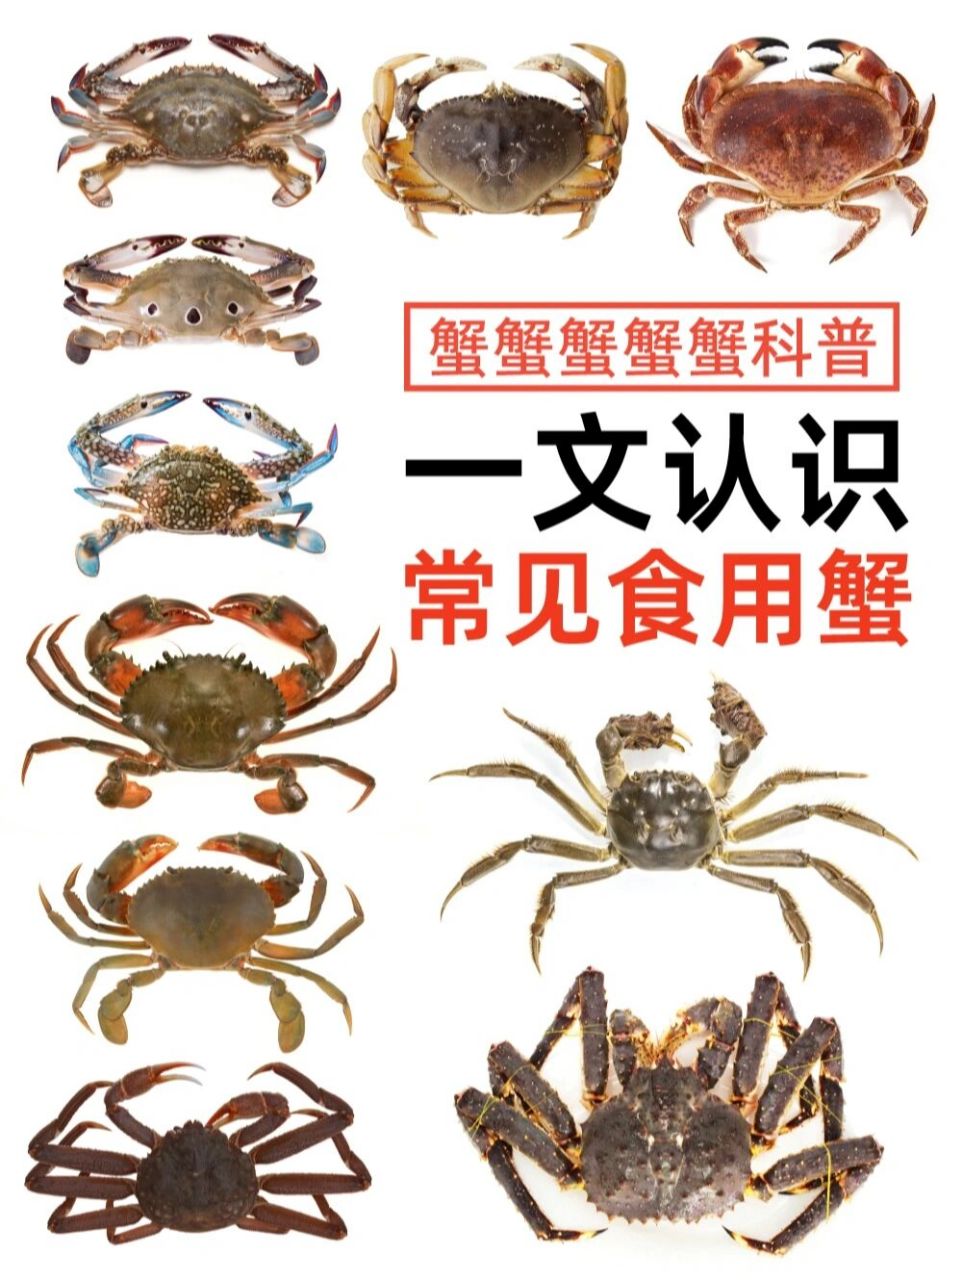 各种蟹的图片和名称图片